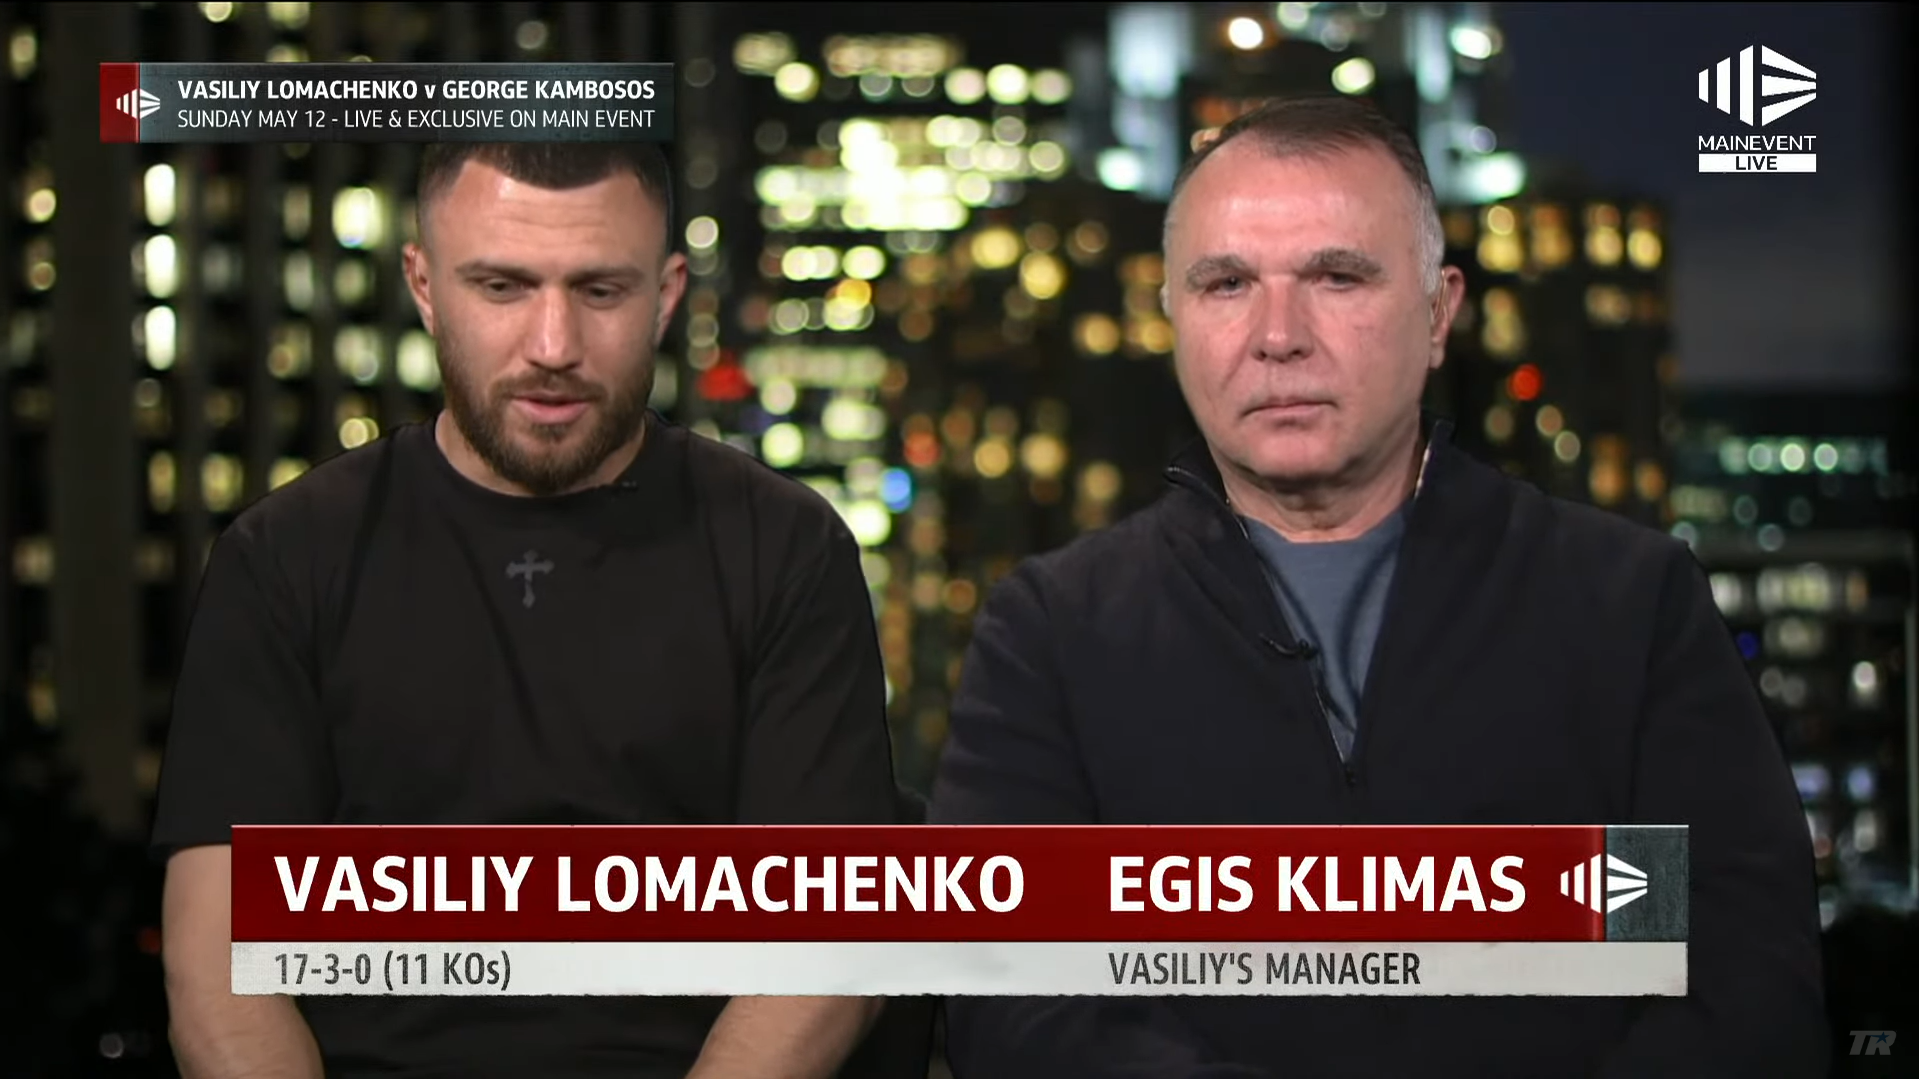 "Вдохновит украинцев": Ломаченко официально получил дату и место нового чемпионского боя